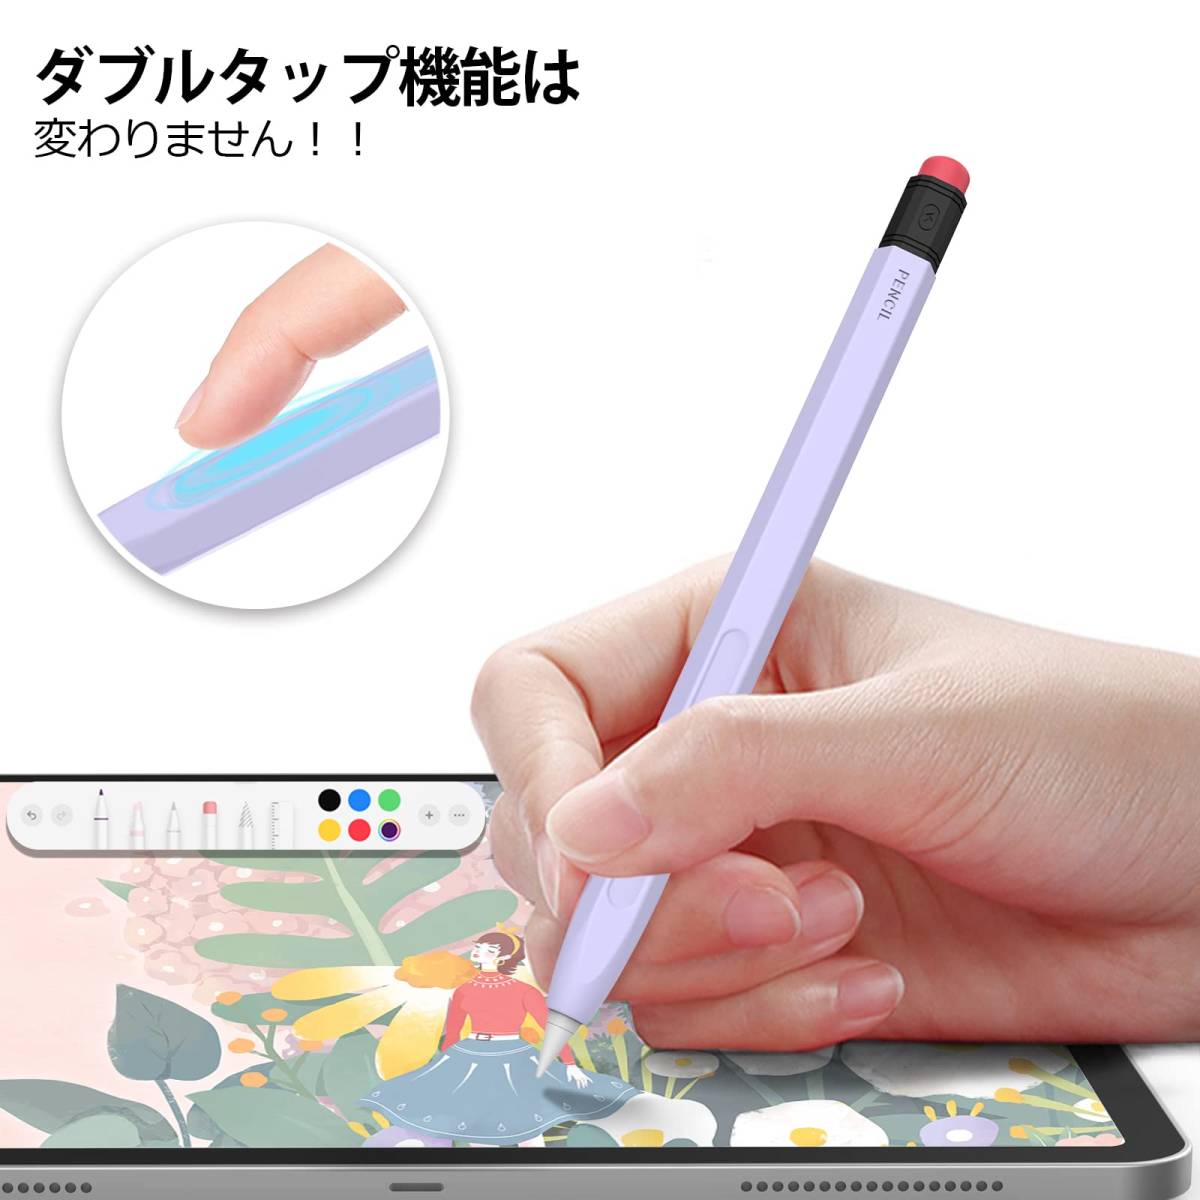 【特価商品】Pencil Apple 第二世代用シリコン保護ケース 鉛筆レトロデザイン 柔らかなシリコン材質 Apple AhaS_画像3